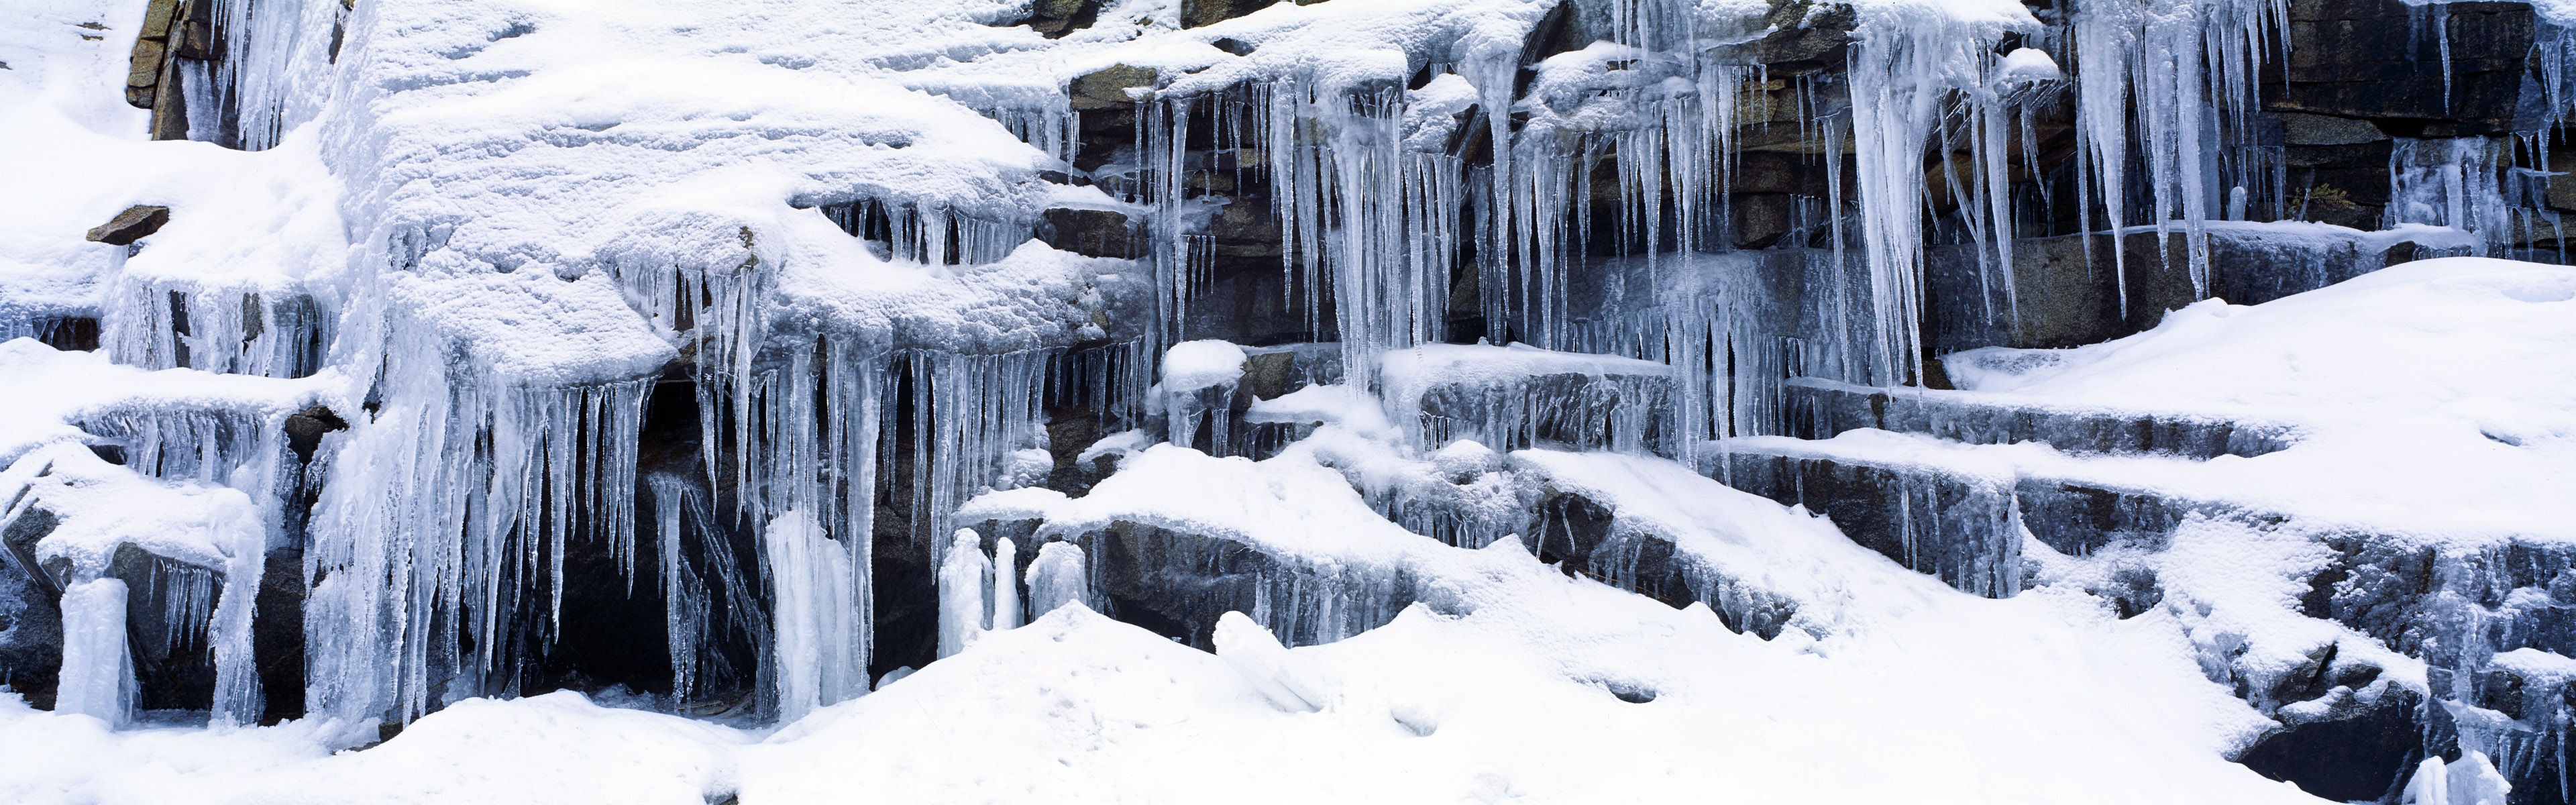 Belle neige froide d'hiver, de Windows 8 fonds d'écran widescreen panoramique #7 - 3840x1200